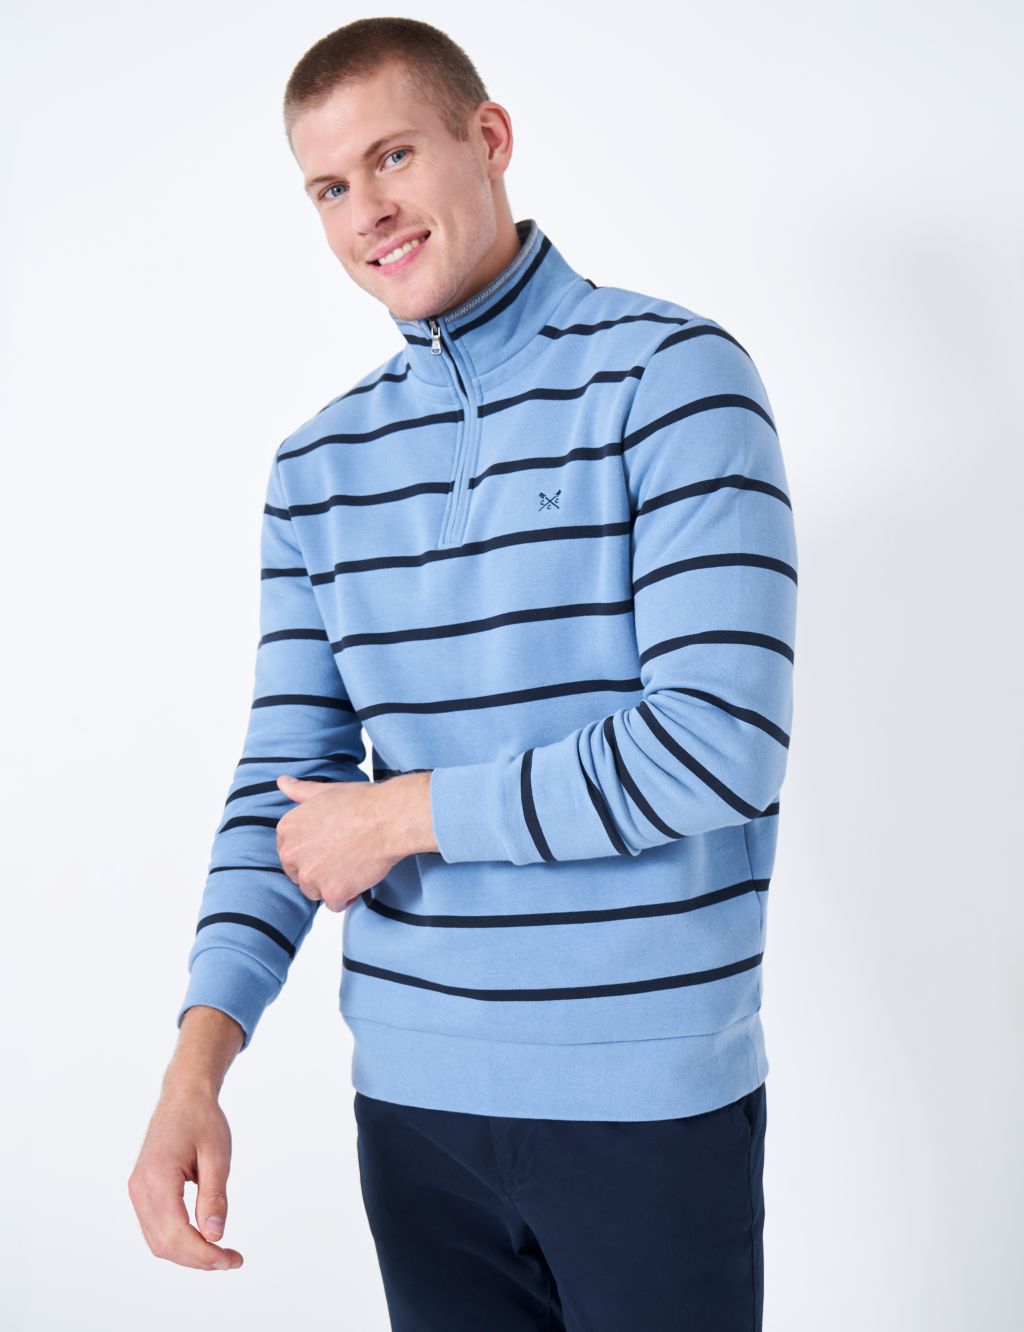 Cotton Rich Striped Half Zip Sweatshirt